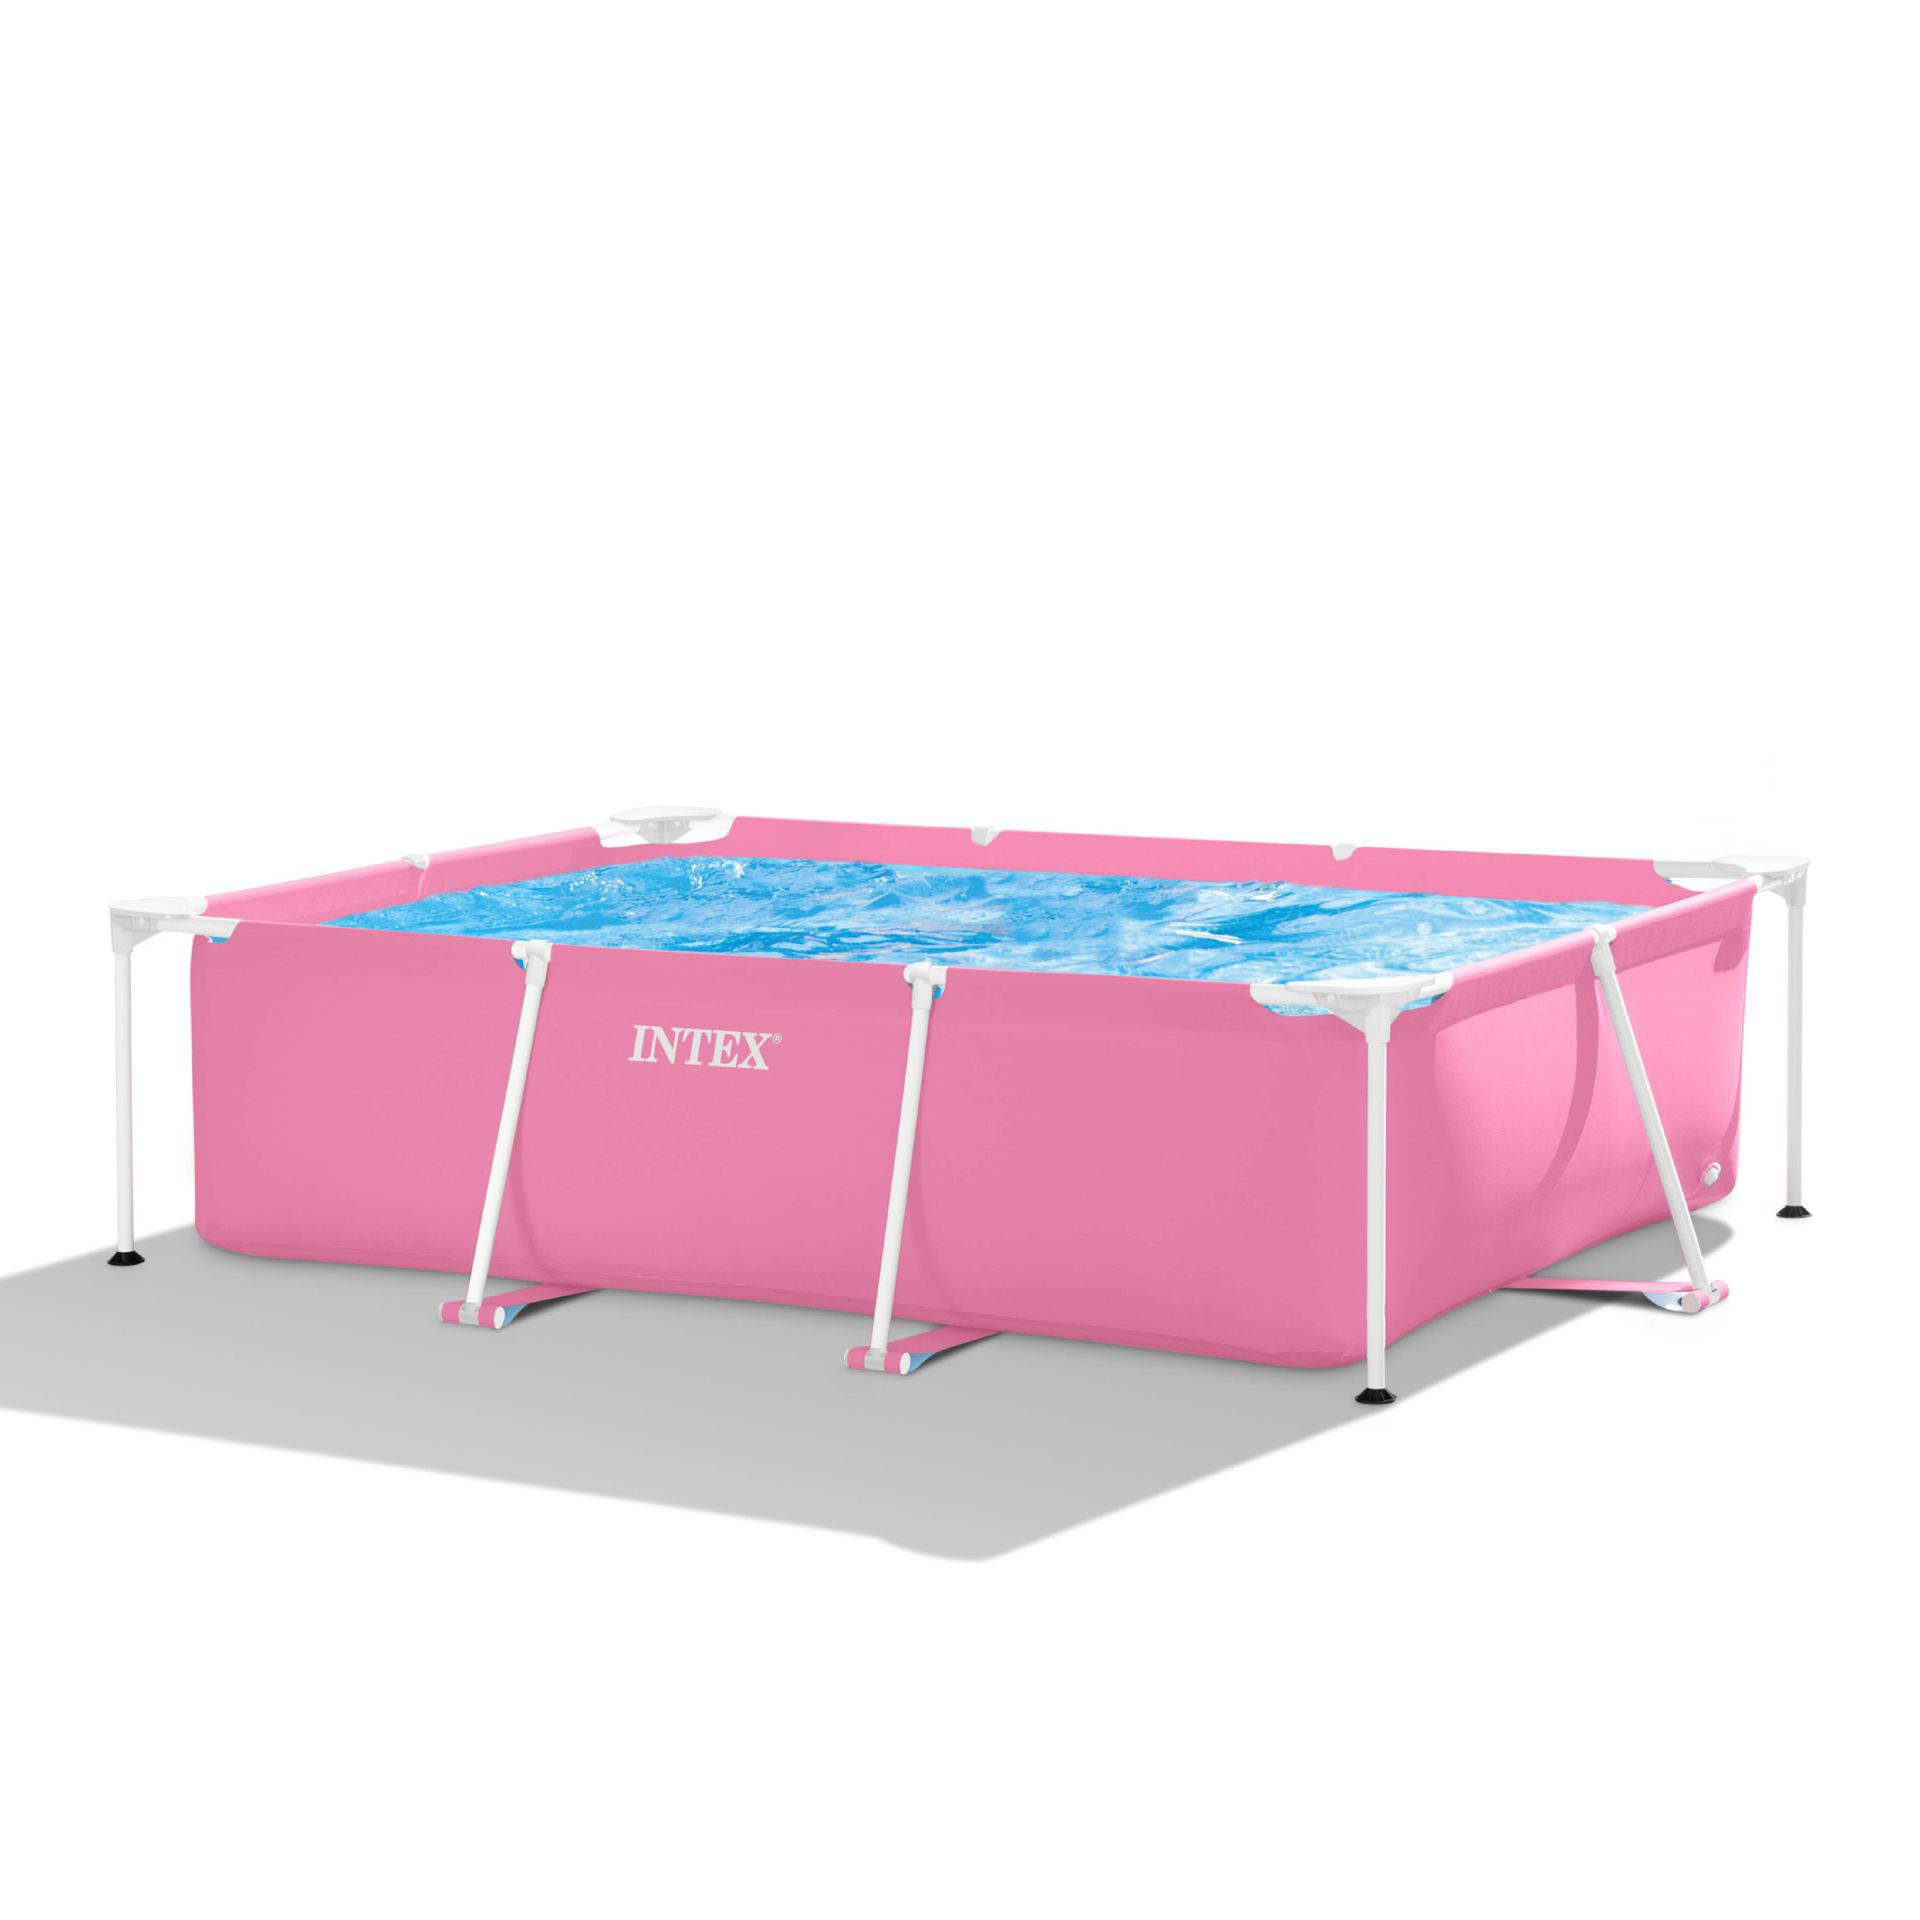 Intex pink rectangular frame pool